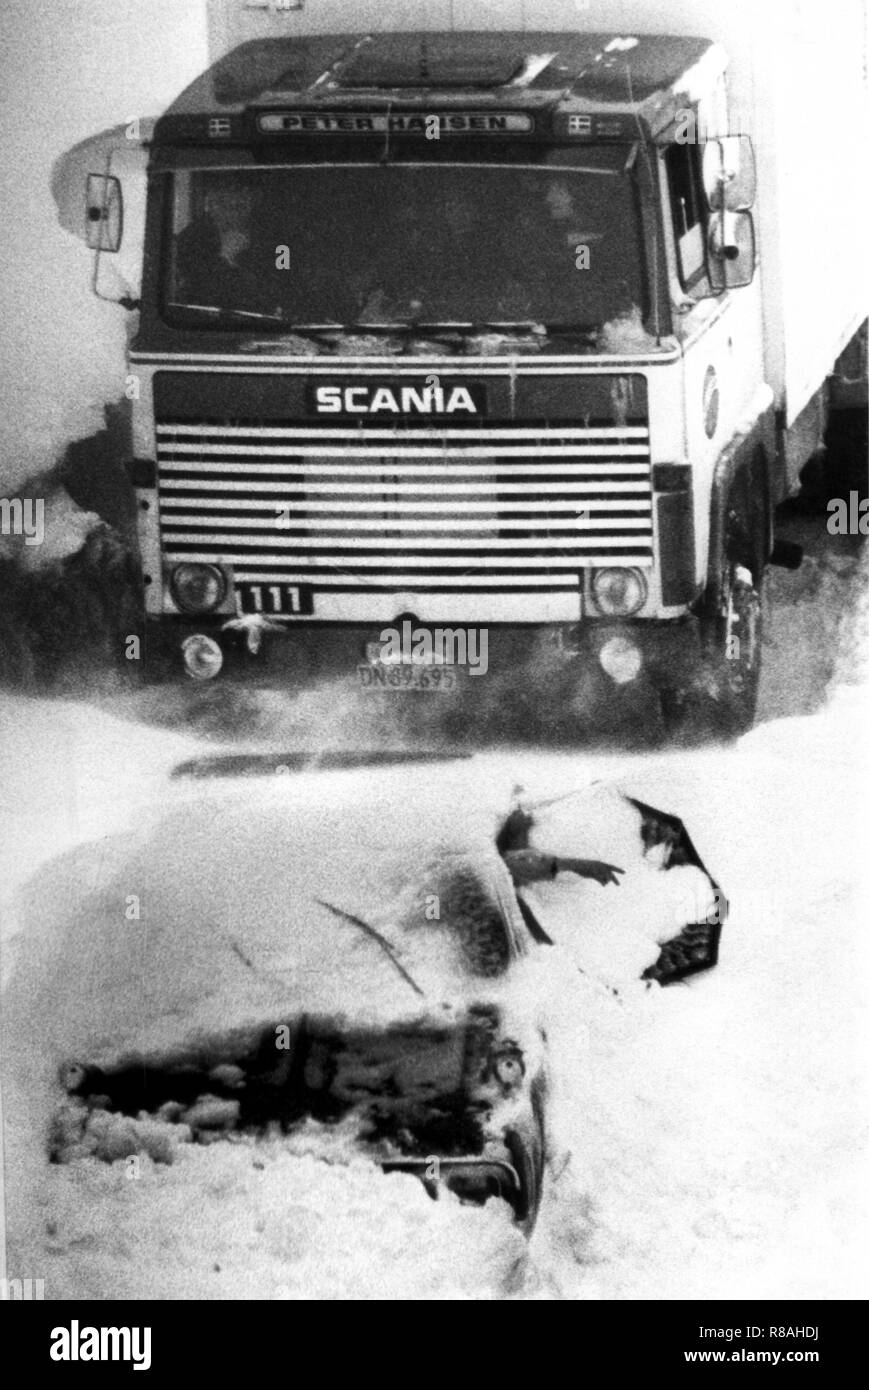 Un pilote fait une impression ici. Environ 100 personnes sont le 15 février 1979 avec des voitures et camions sur les locaux de l'Rastattatte Hamburg-Flensburg Brokenlande sur l'autoroute. La chute de température le 29 décembre 1978, conduit à un chaos de neige dans le nord de l'Allemagne, le nord de la RDA, le Danemark et le sud de la Suède. En partie le trafic et l'alimentation s'est effondré, localités ont été coupés du monde extérieur. Dans la République fédérale seulement, 17 personnes ont été tuées à cause de la neige le chaos. Le 14 février 1979 chute de neige dense et une gale-force tempête dans le nord de l'Allemagne a conduit à un autre snow Banque D'Images